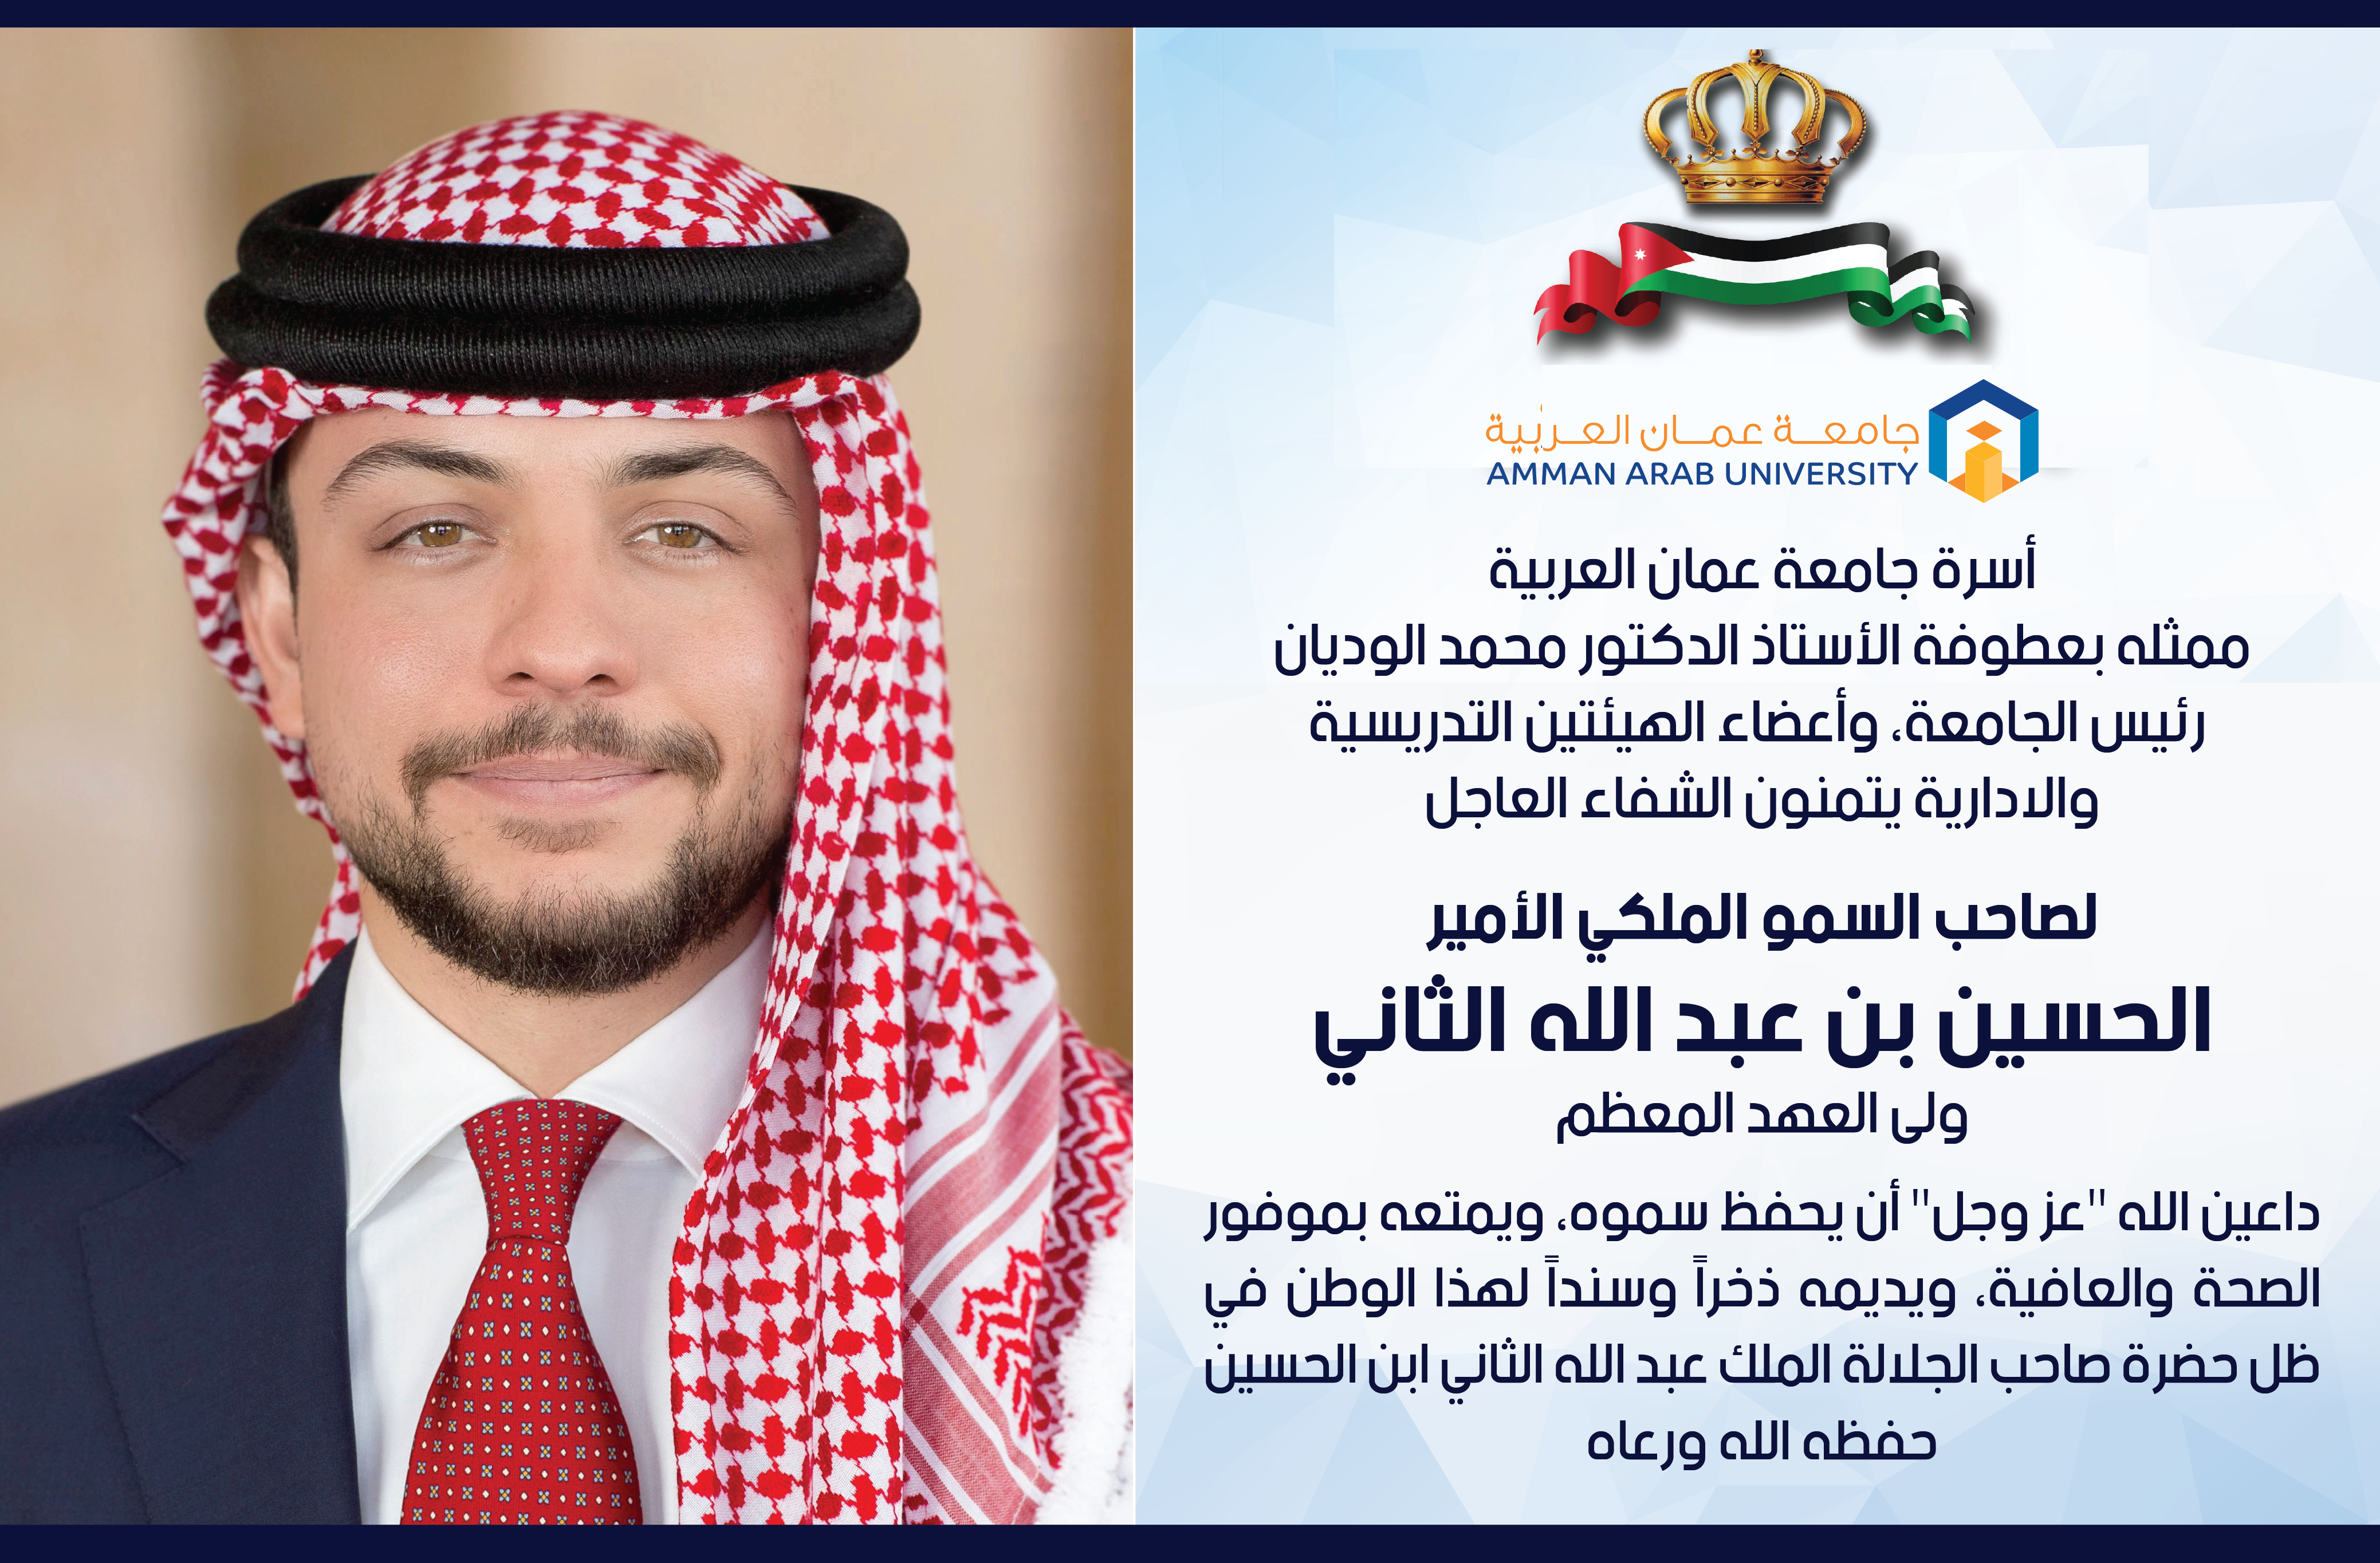 جامعة عمان العربية تتمنى الشفاء العاجل لصاحب السمو الملكي الأمير الحسين ولي العهد المعظم